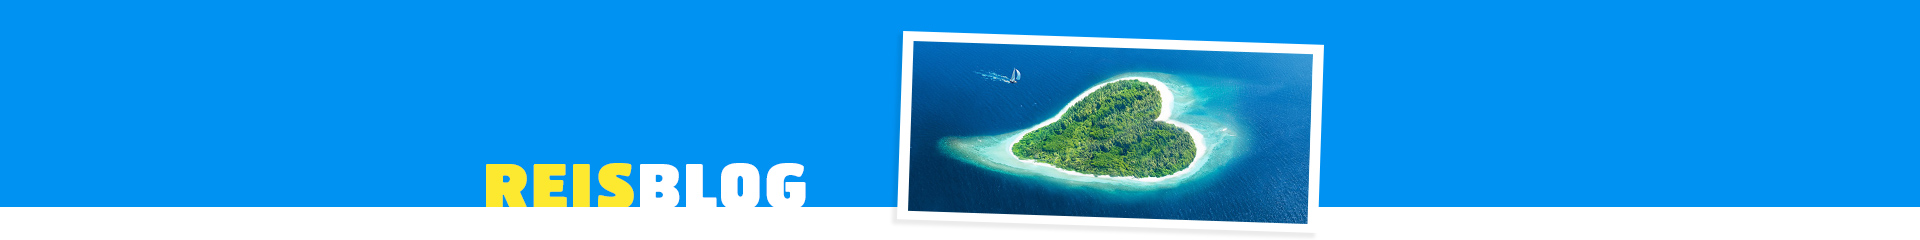 Prachtig hartvormig eiland, met helder blauwe zee en groene hart 